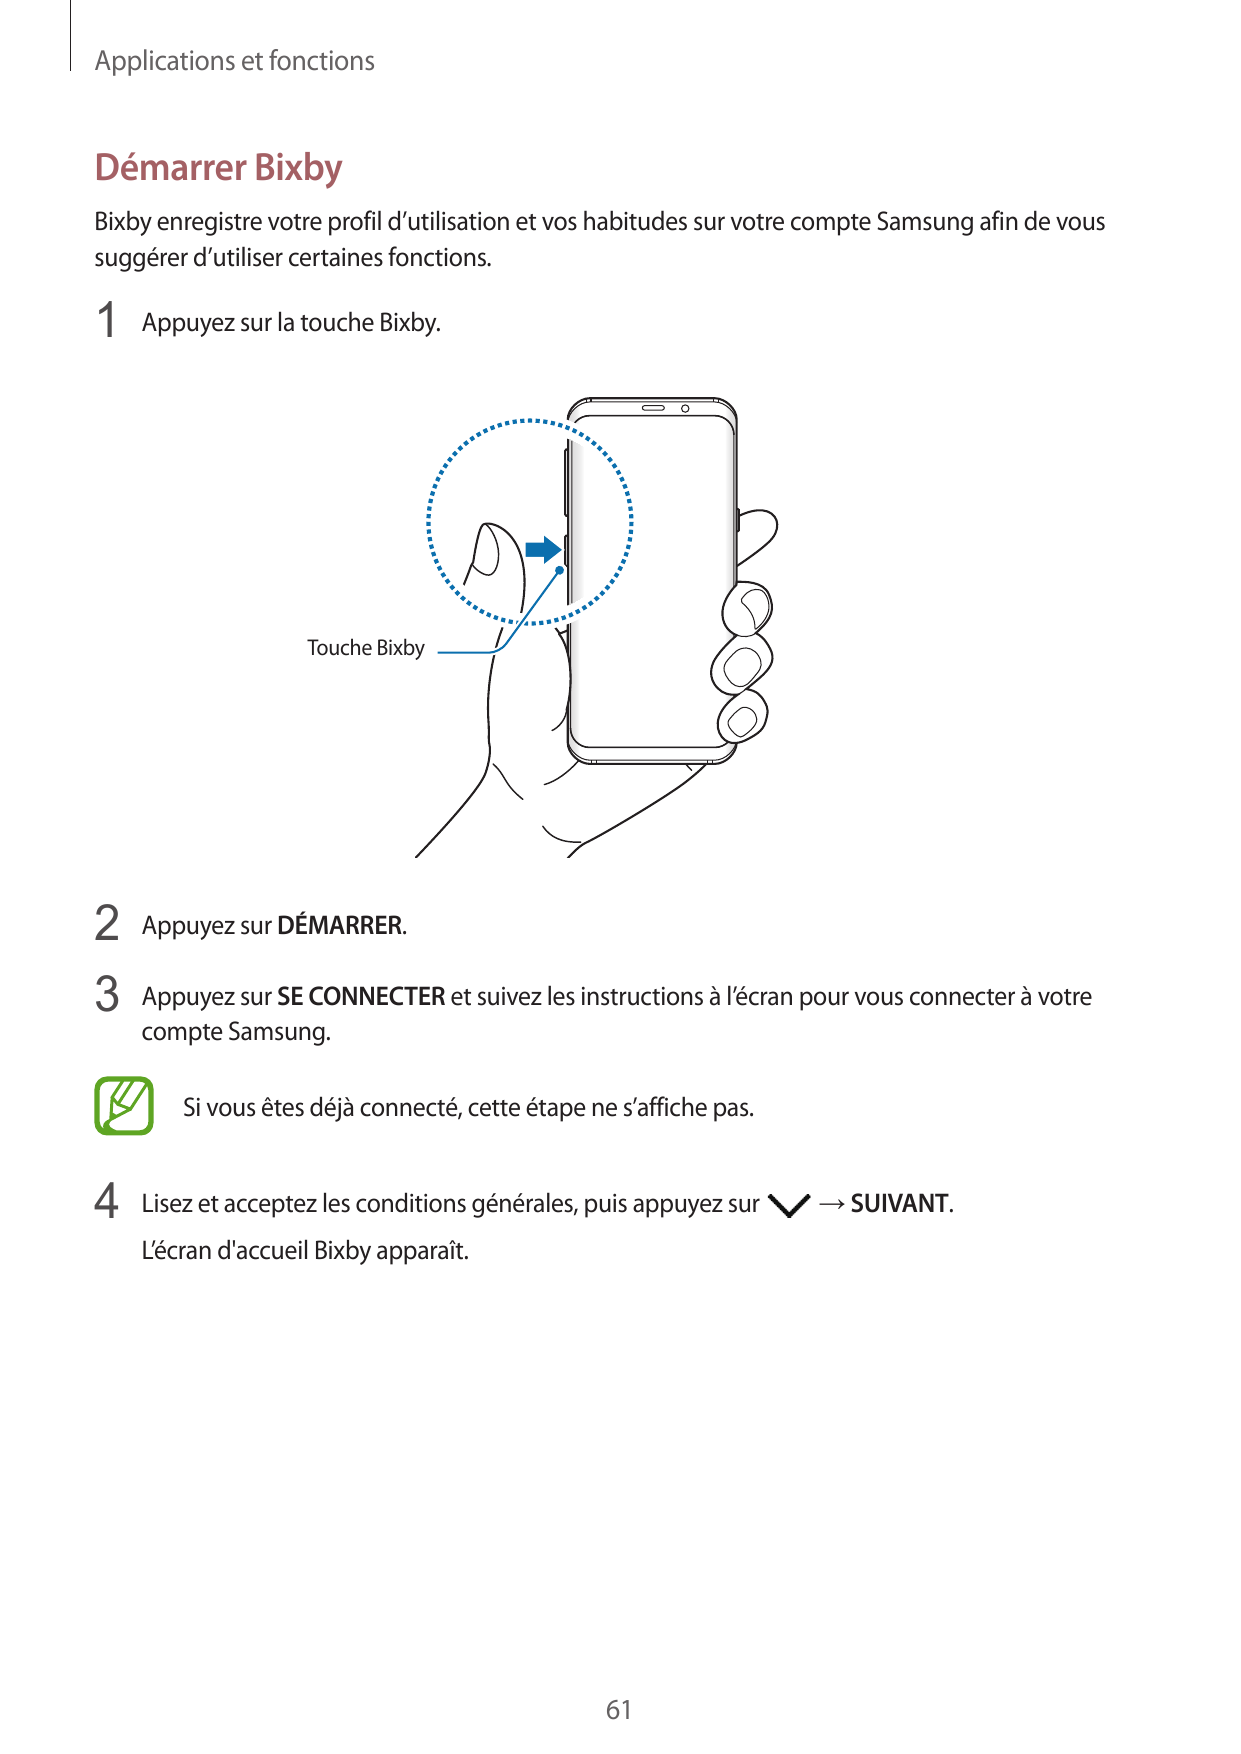 Applications et fonctionsDémarrer BixbyBixby enregistre votre profil d’utilisation et vos habitudes sur votre compte Samsung afi